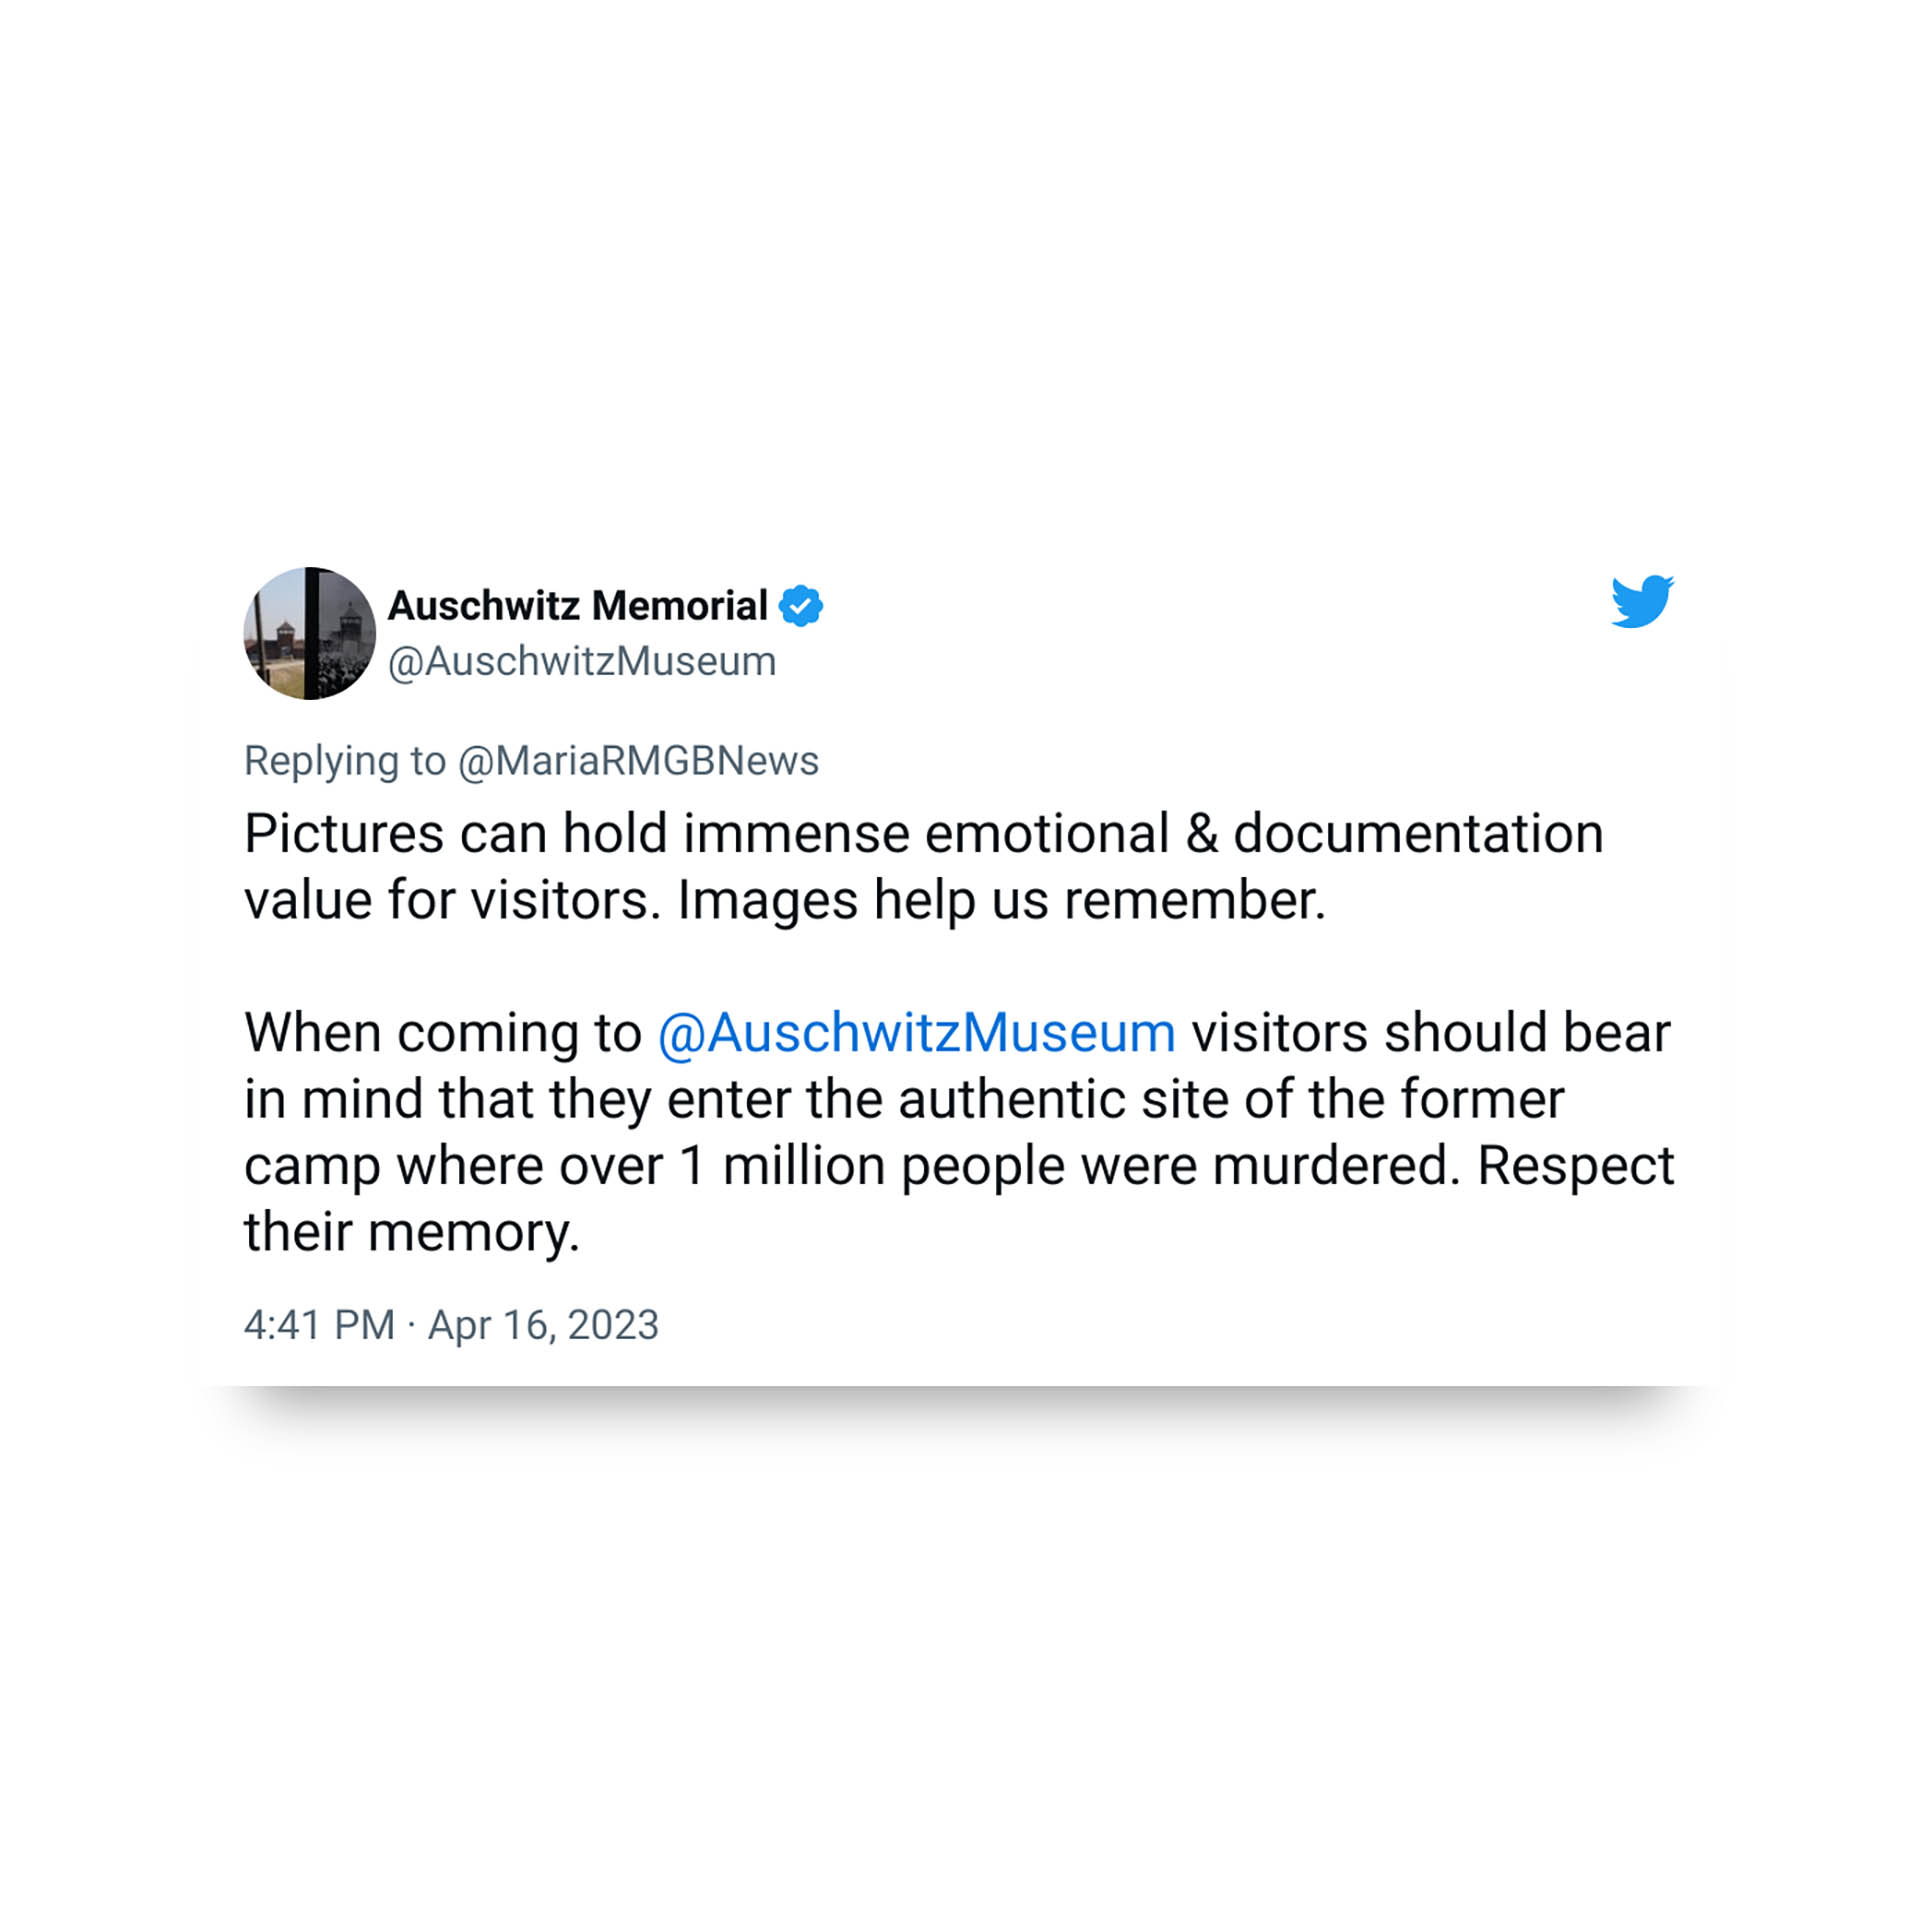 Los tuits del Memorail de Auschwitz pidiendo mantener una actitud de respeto en el lugar donde murió más de un millón de personas